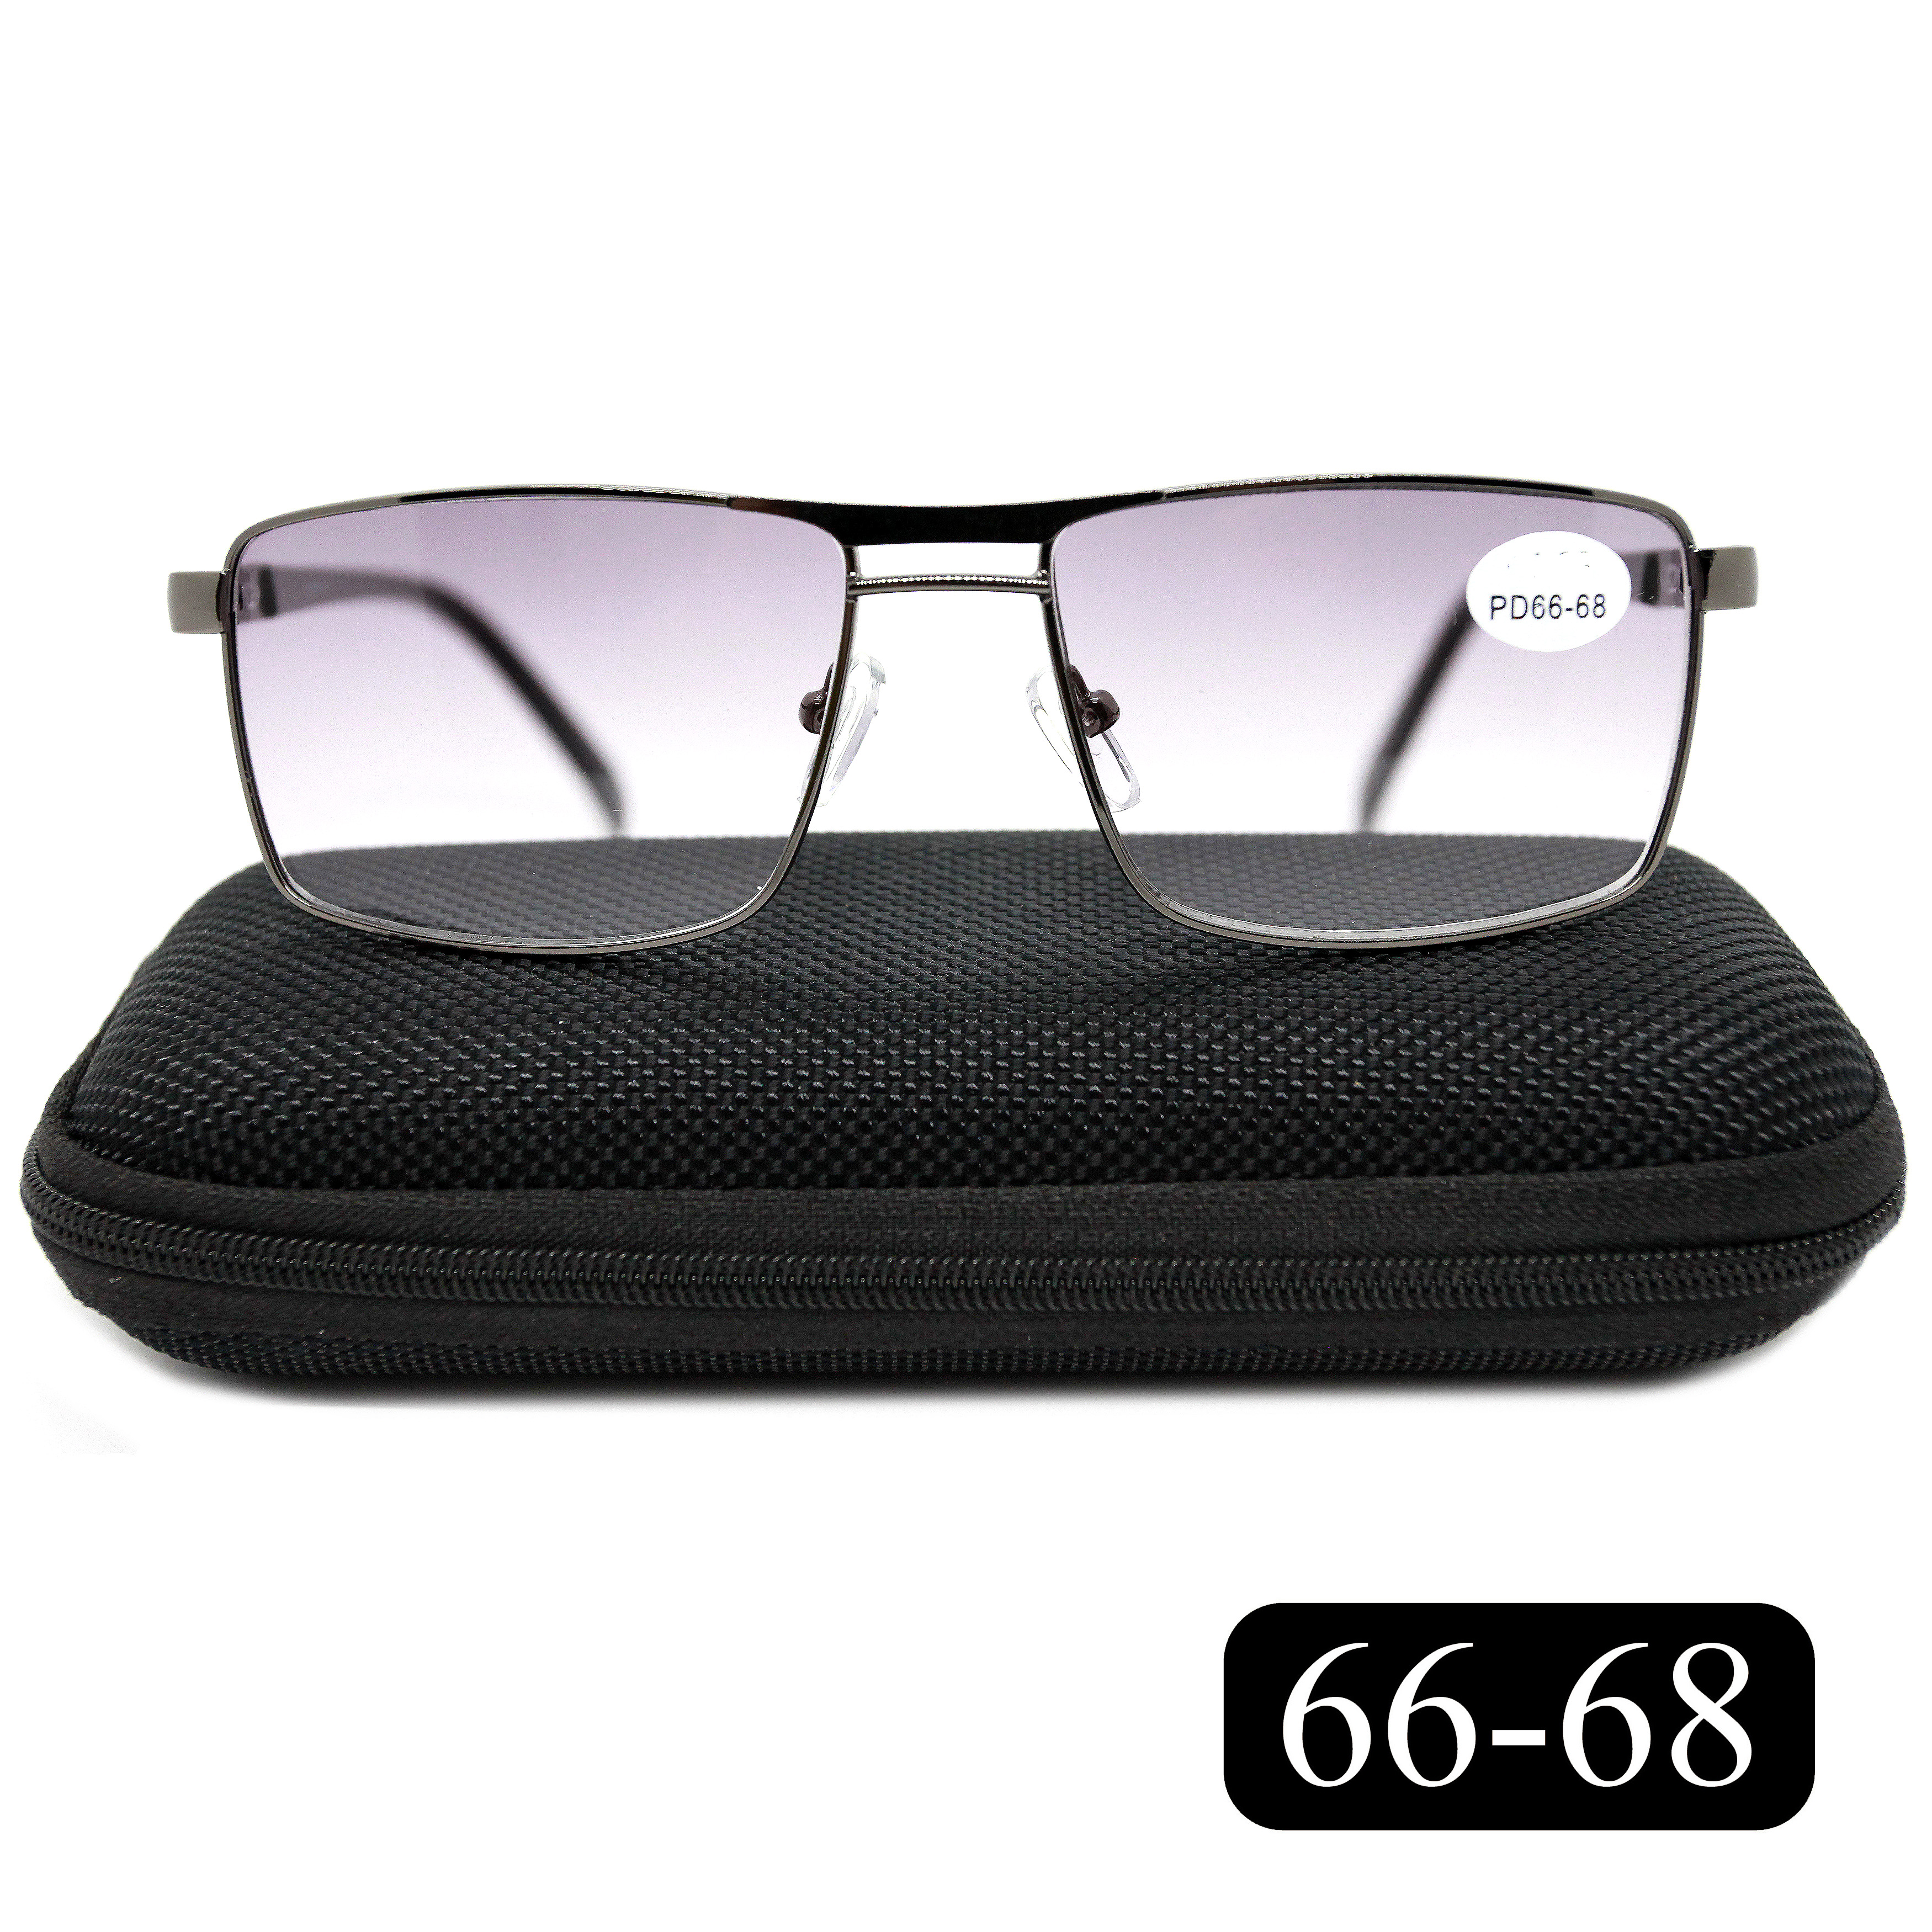 Готовые очки Salivio 5009 +2,25, c футляром, с тонировкой, черный, РЦ 66-68